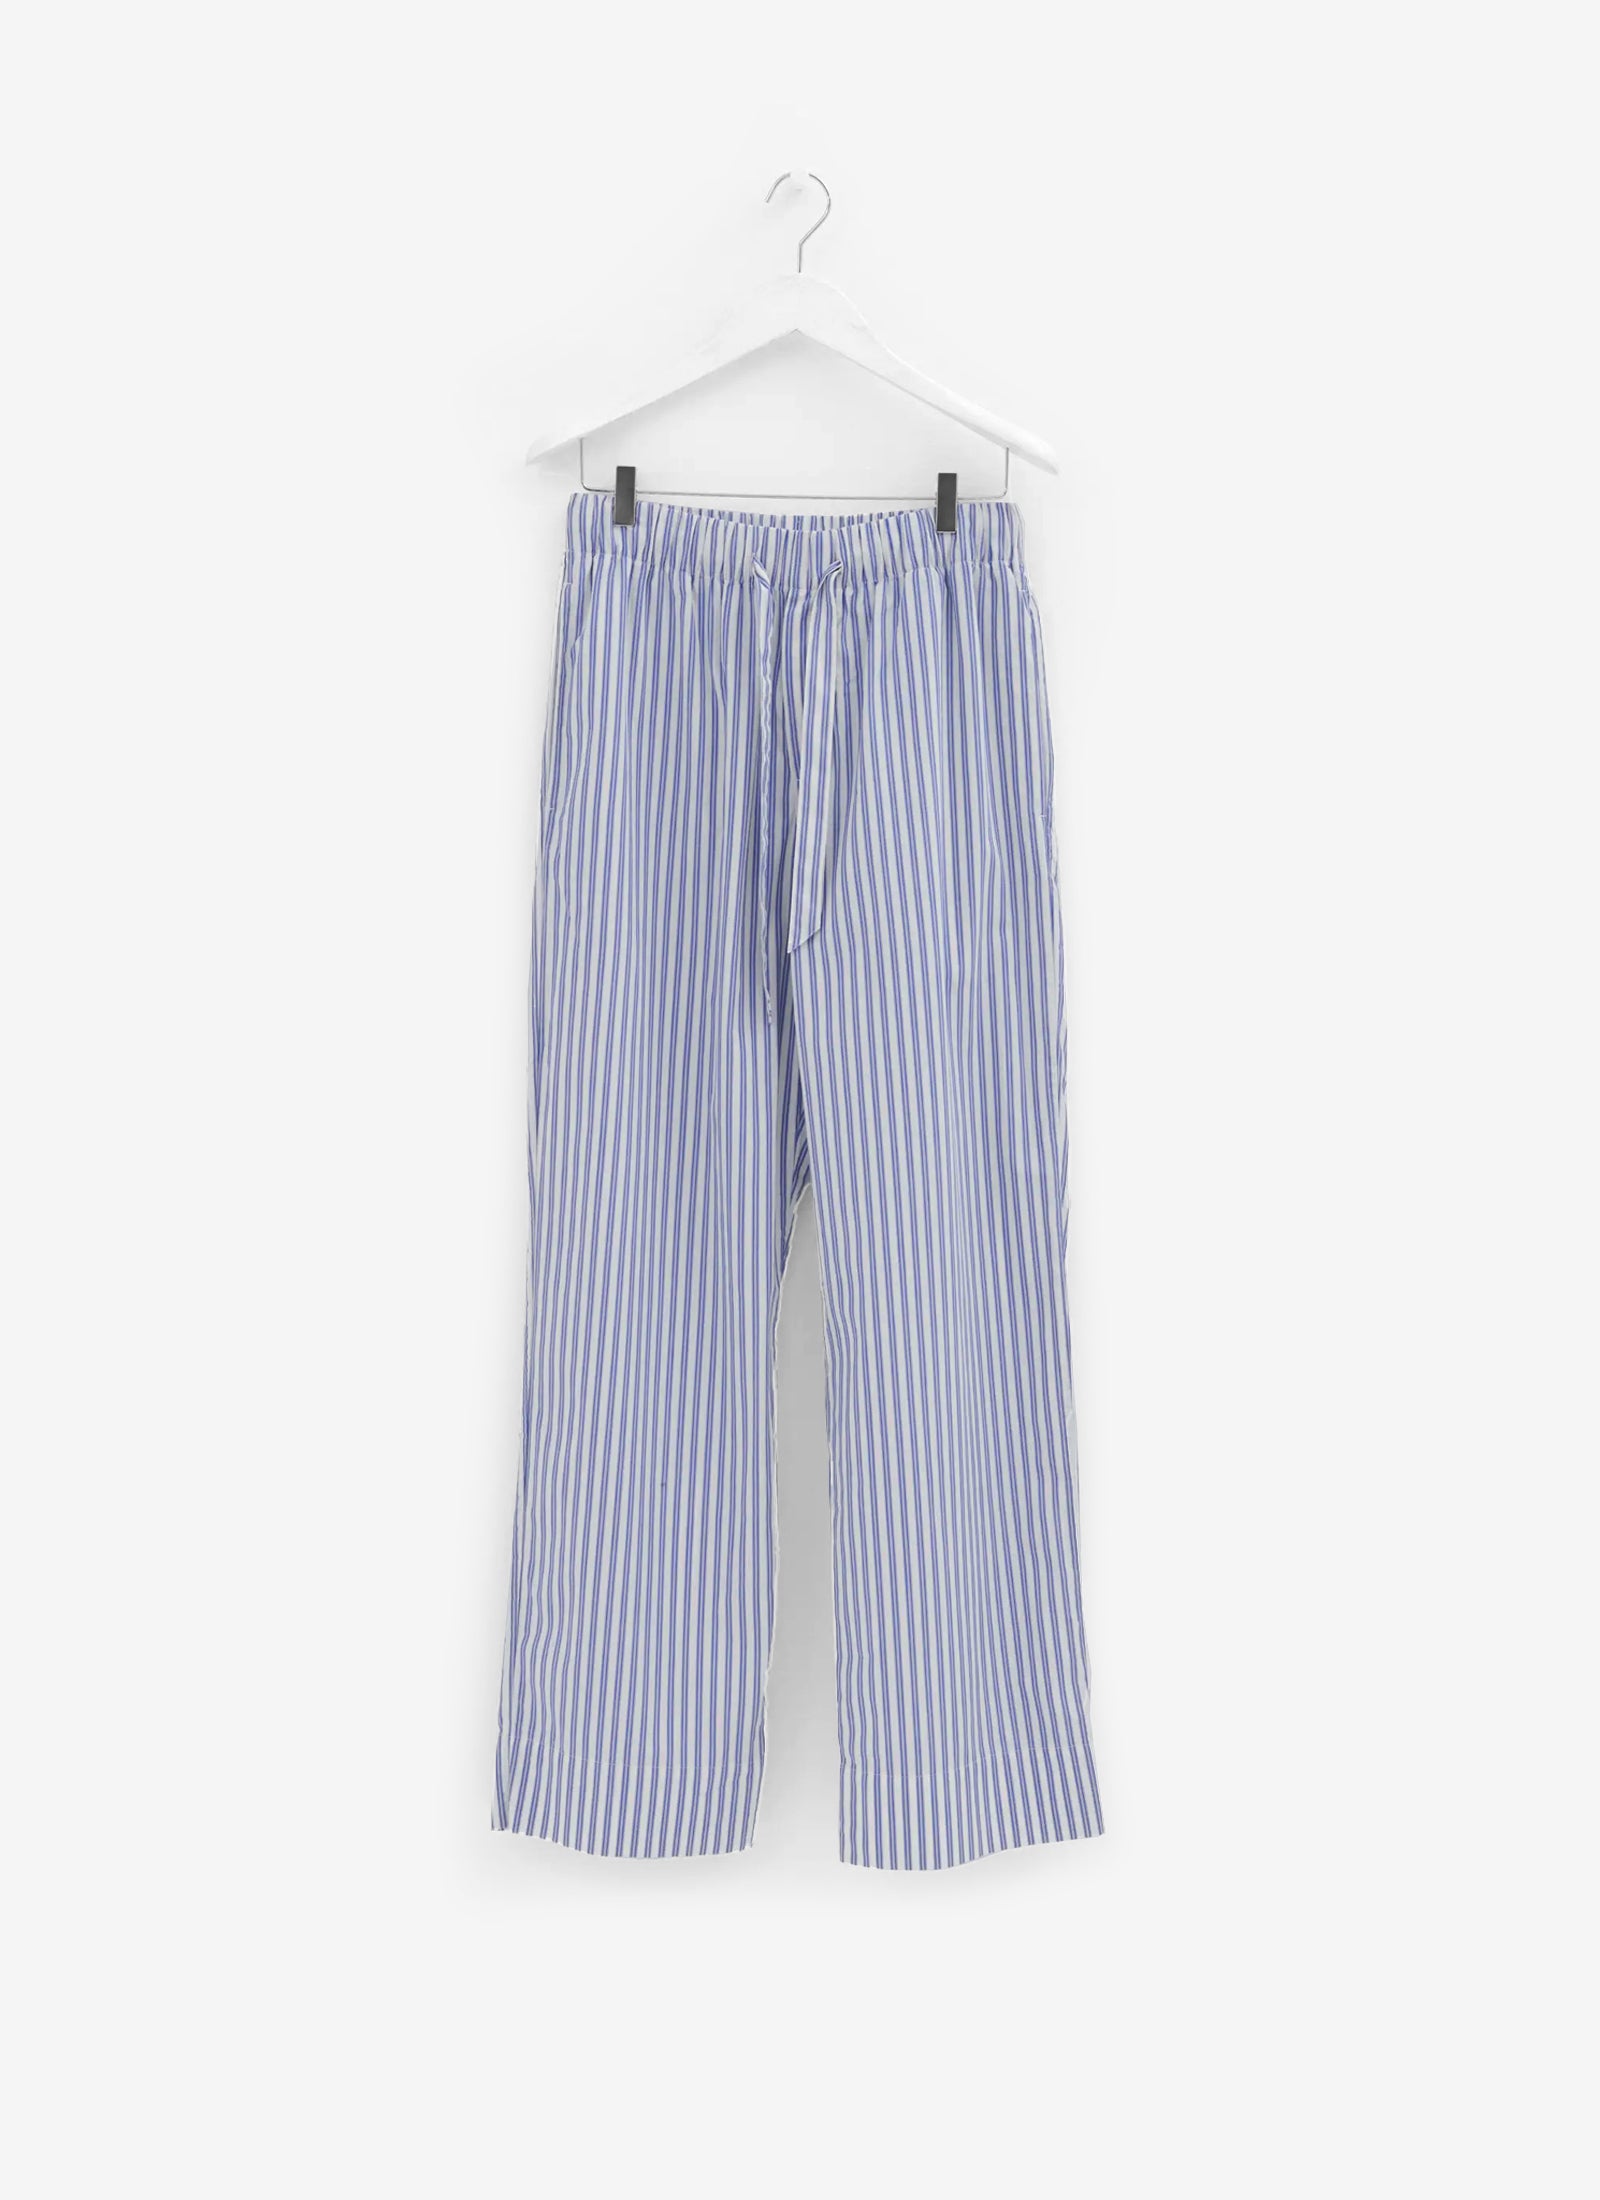 Poplin Sleep Pants - Skagen Stripes